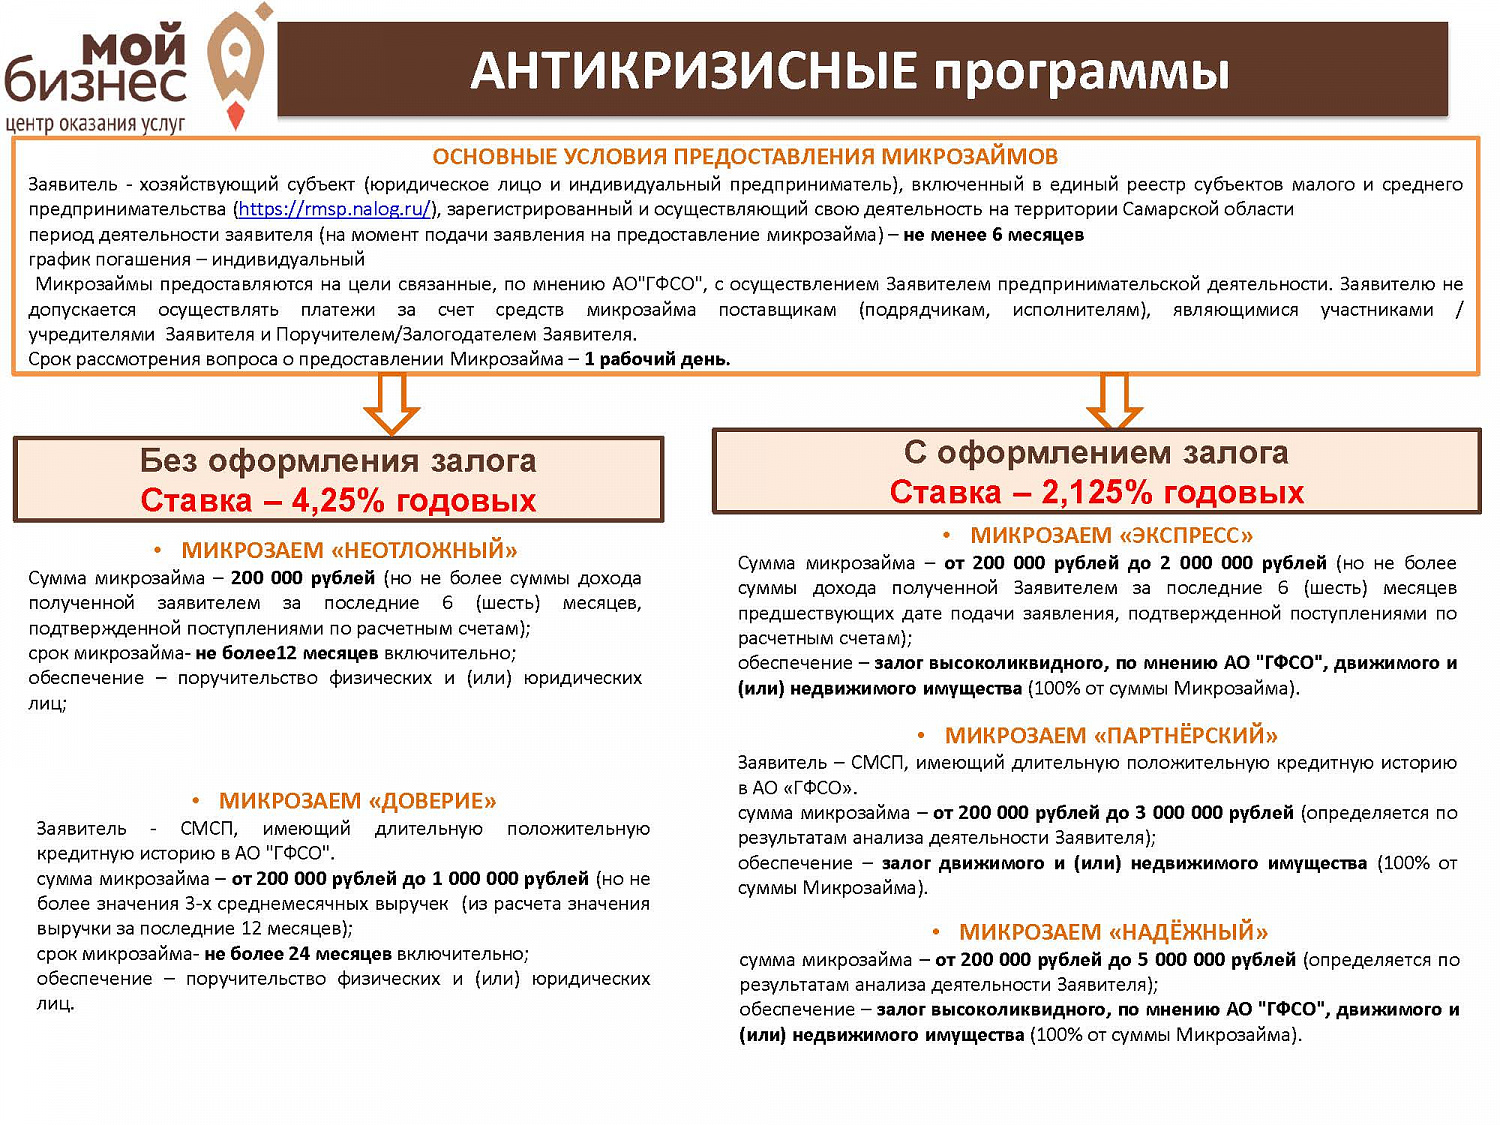 Гарантийный фонд Самарской области разработал новые антикризисные программы для субъектов МСП